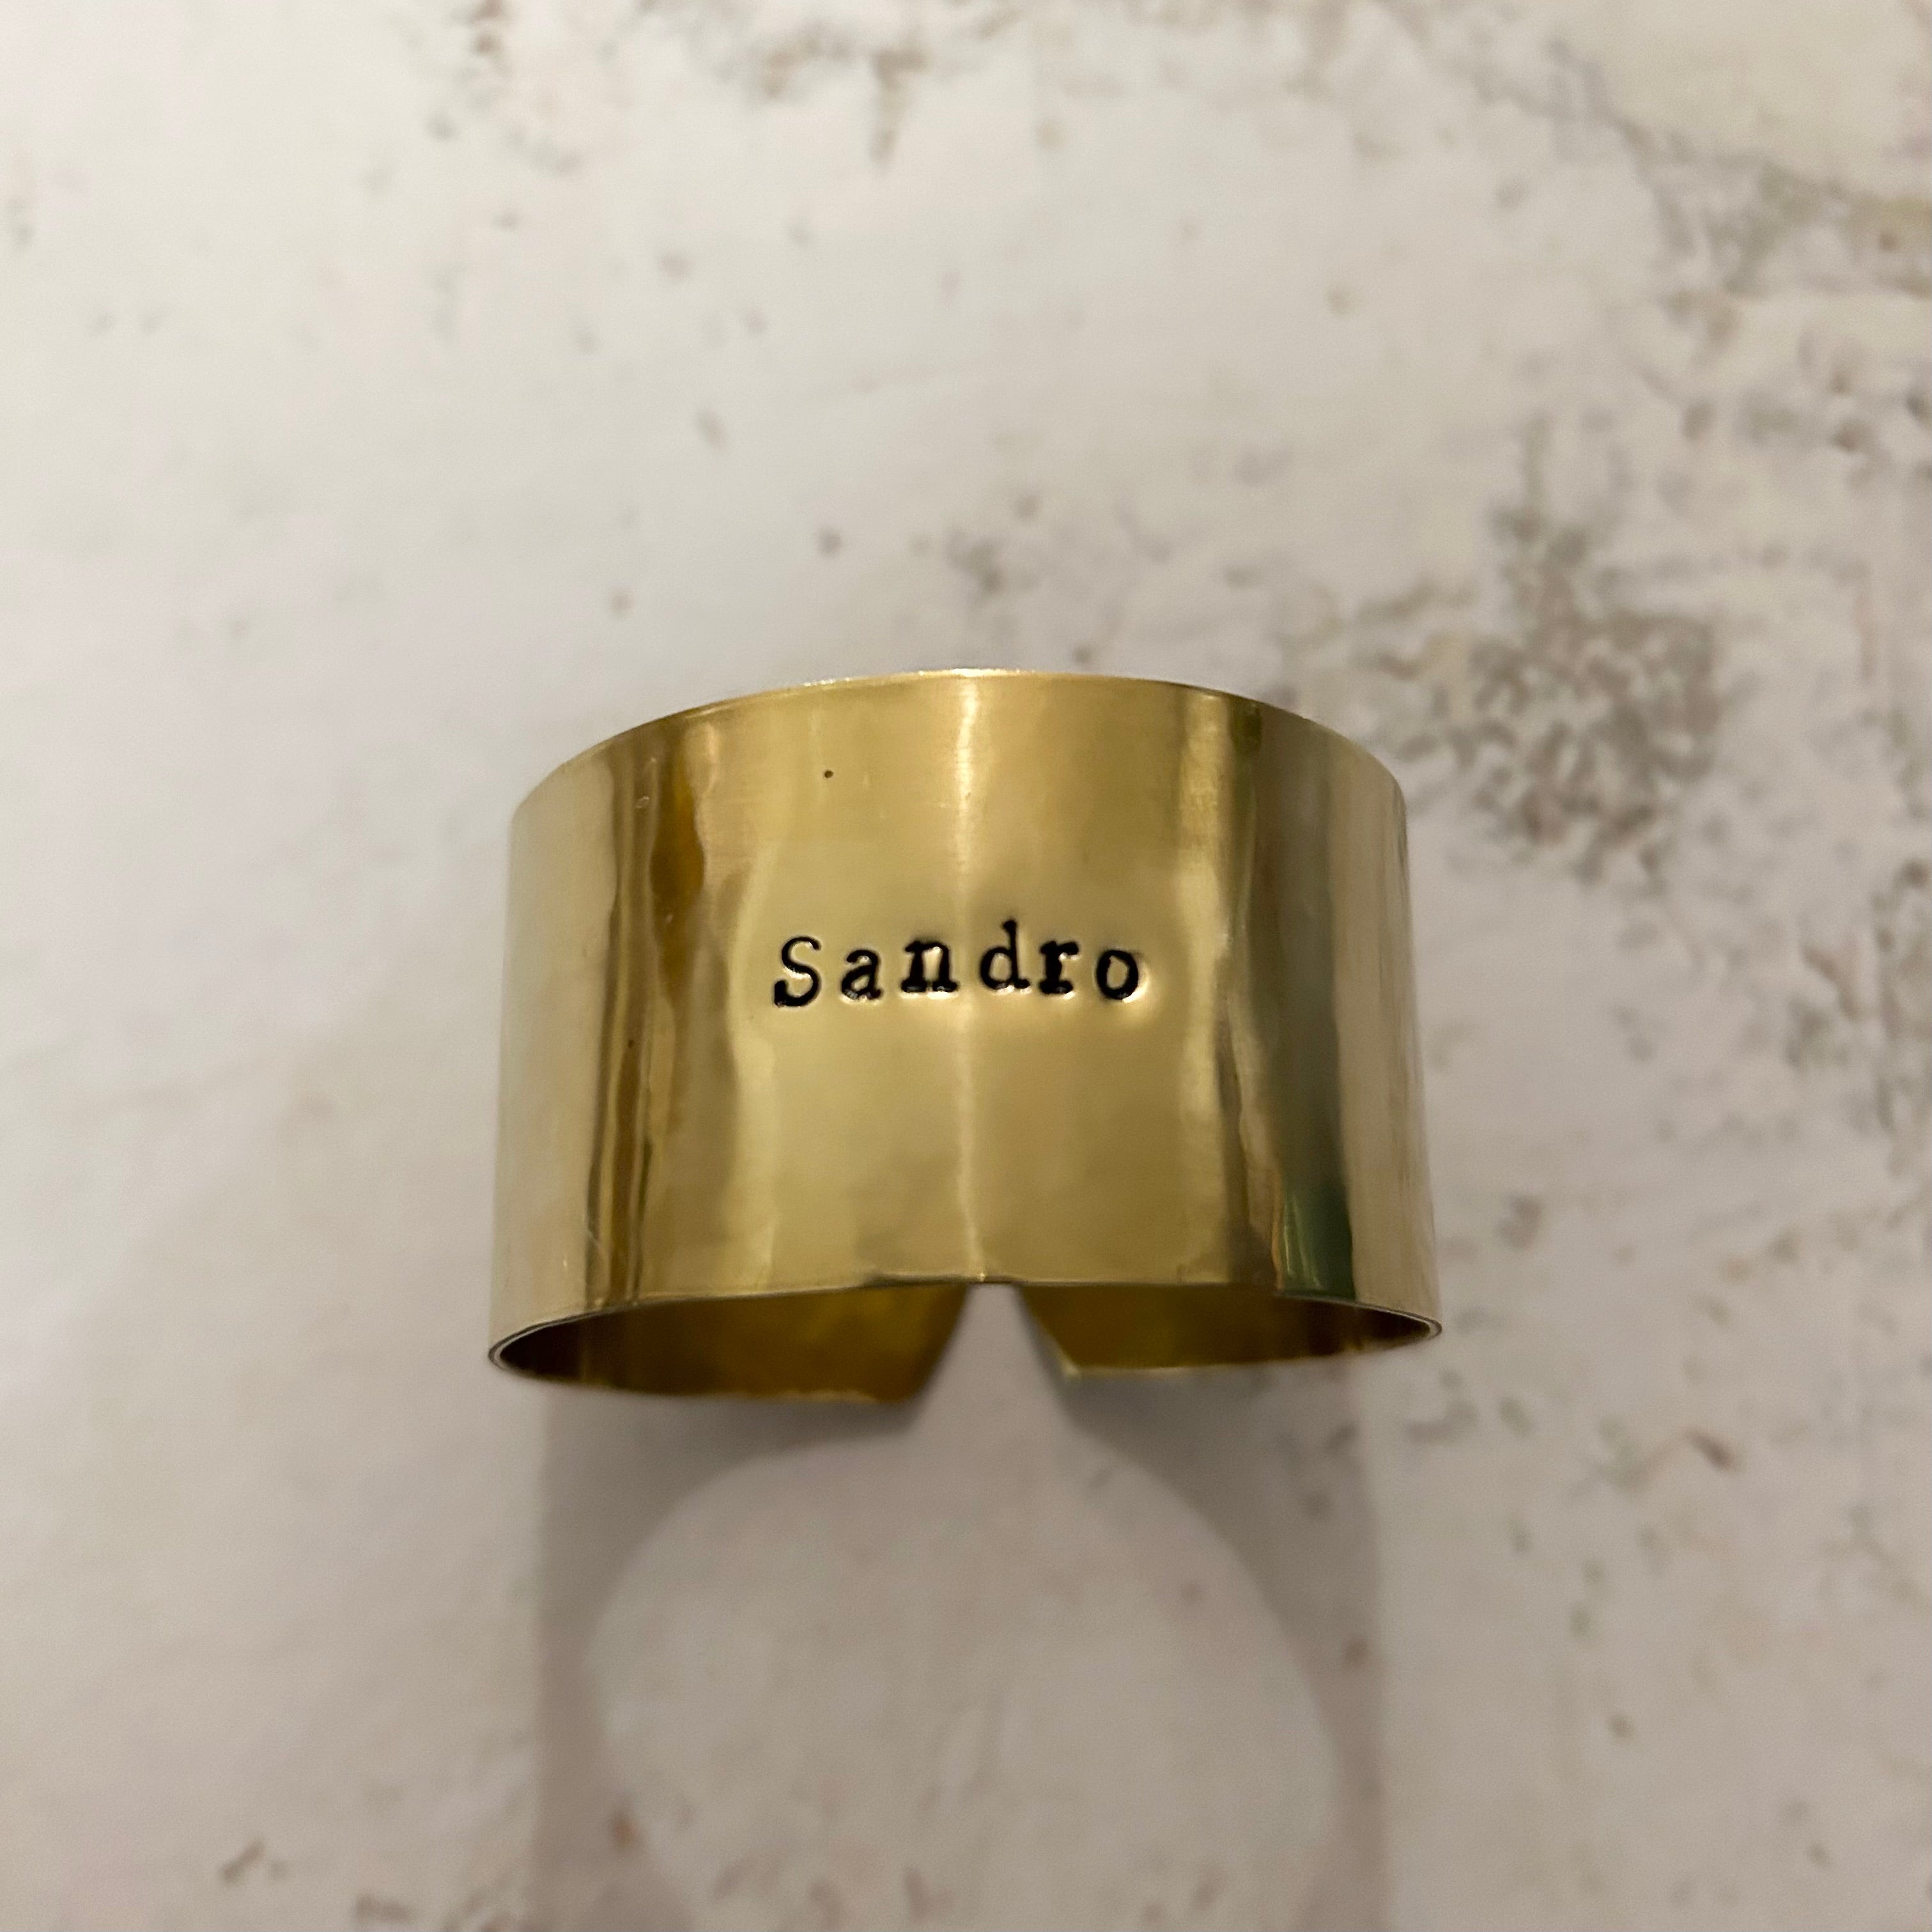 Collection oups - les imparfaits - « Sandro » martelé